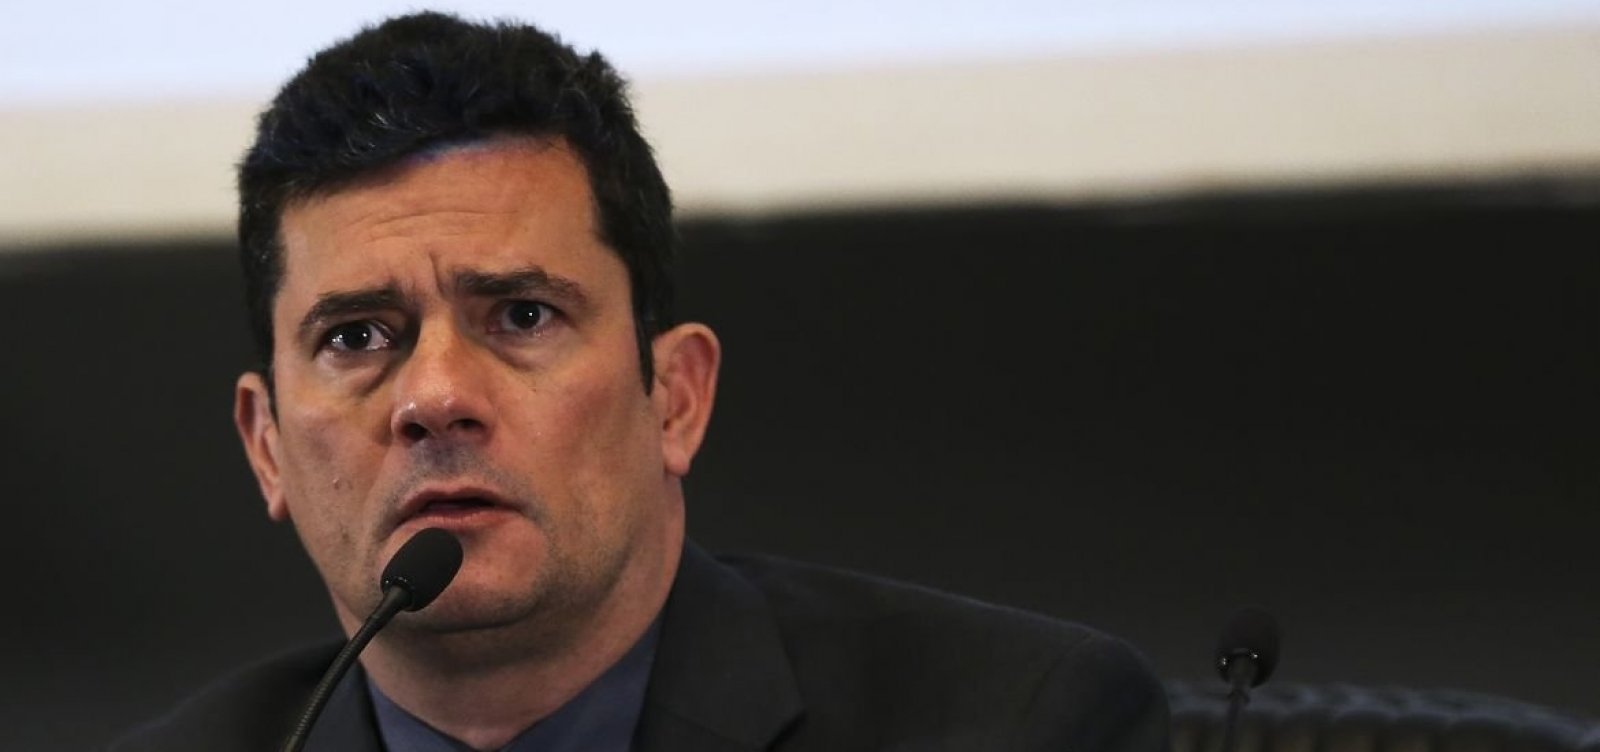 Após pedido por debate, Moro diz não haver possibilidade de diálogo com Ciro Gomes